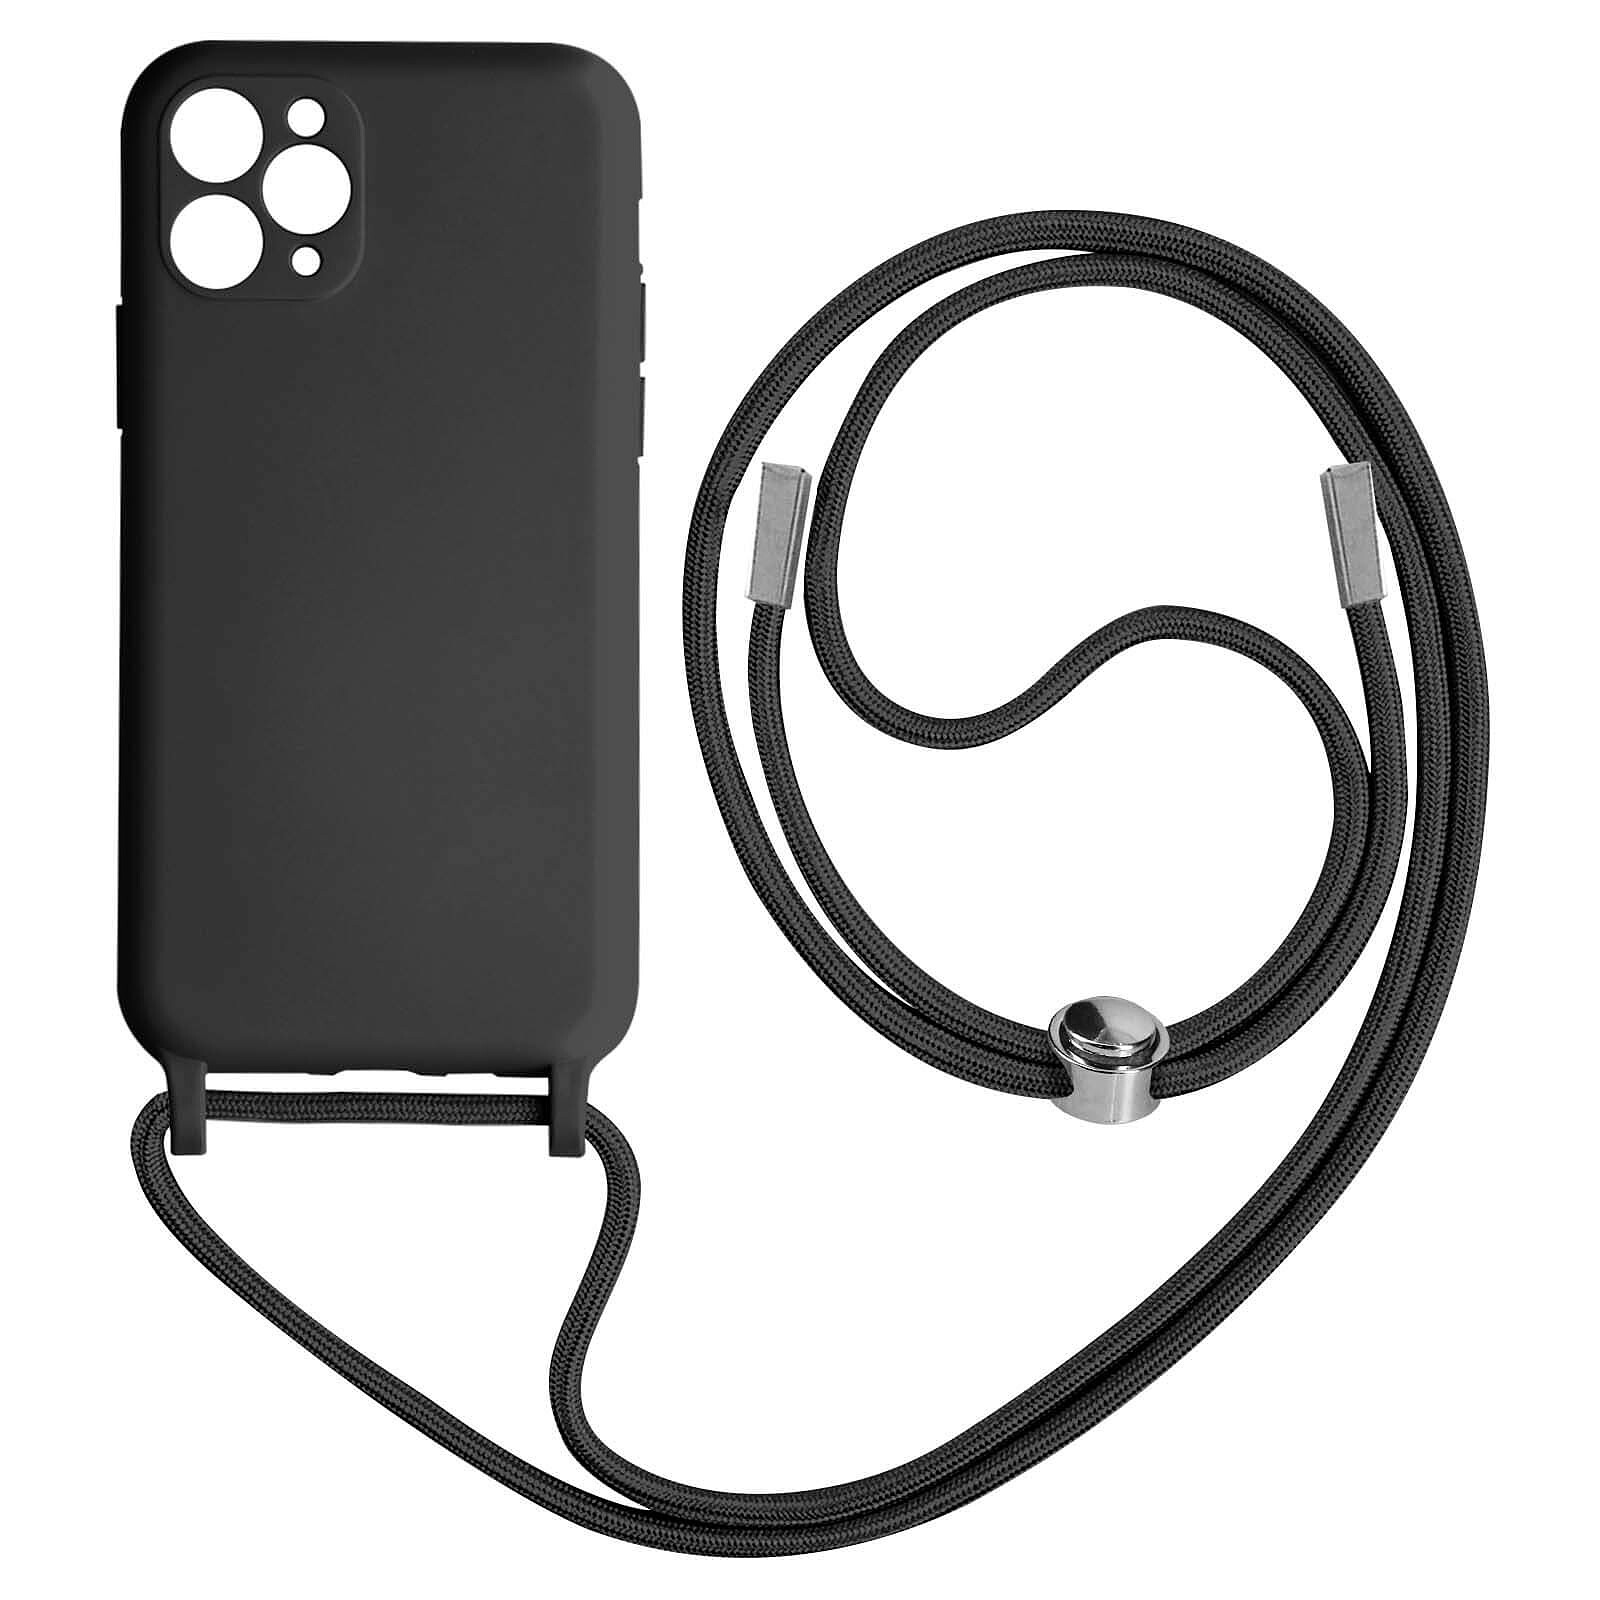 Coque rigide avec cache caméra pour iPhone 11 - semi-transparente/noire